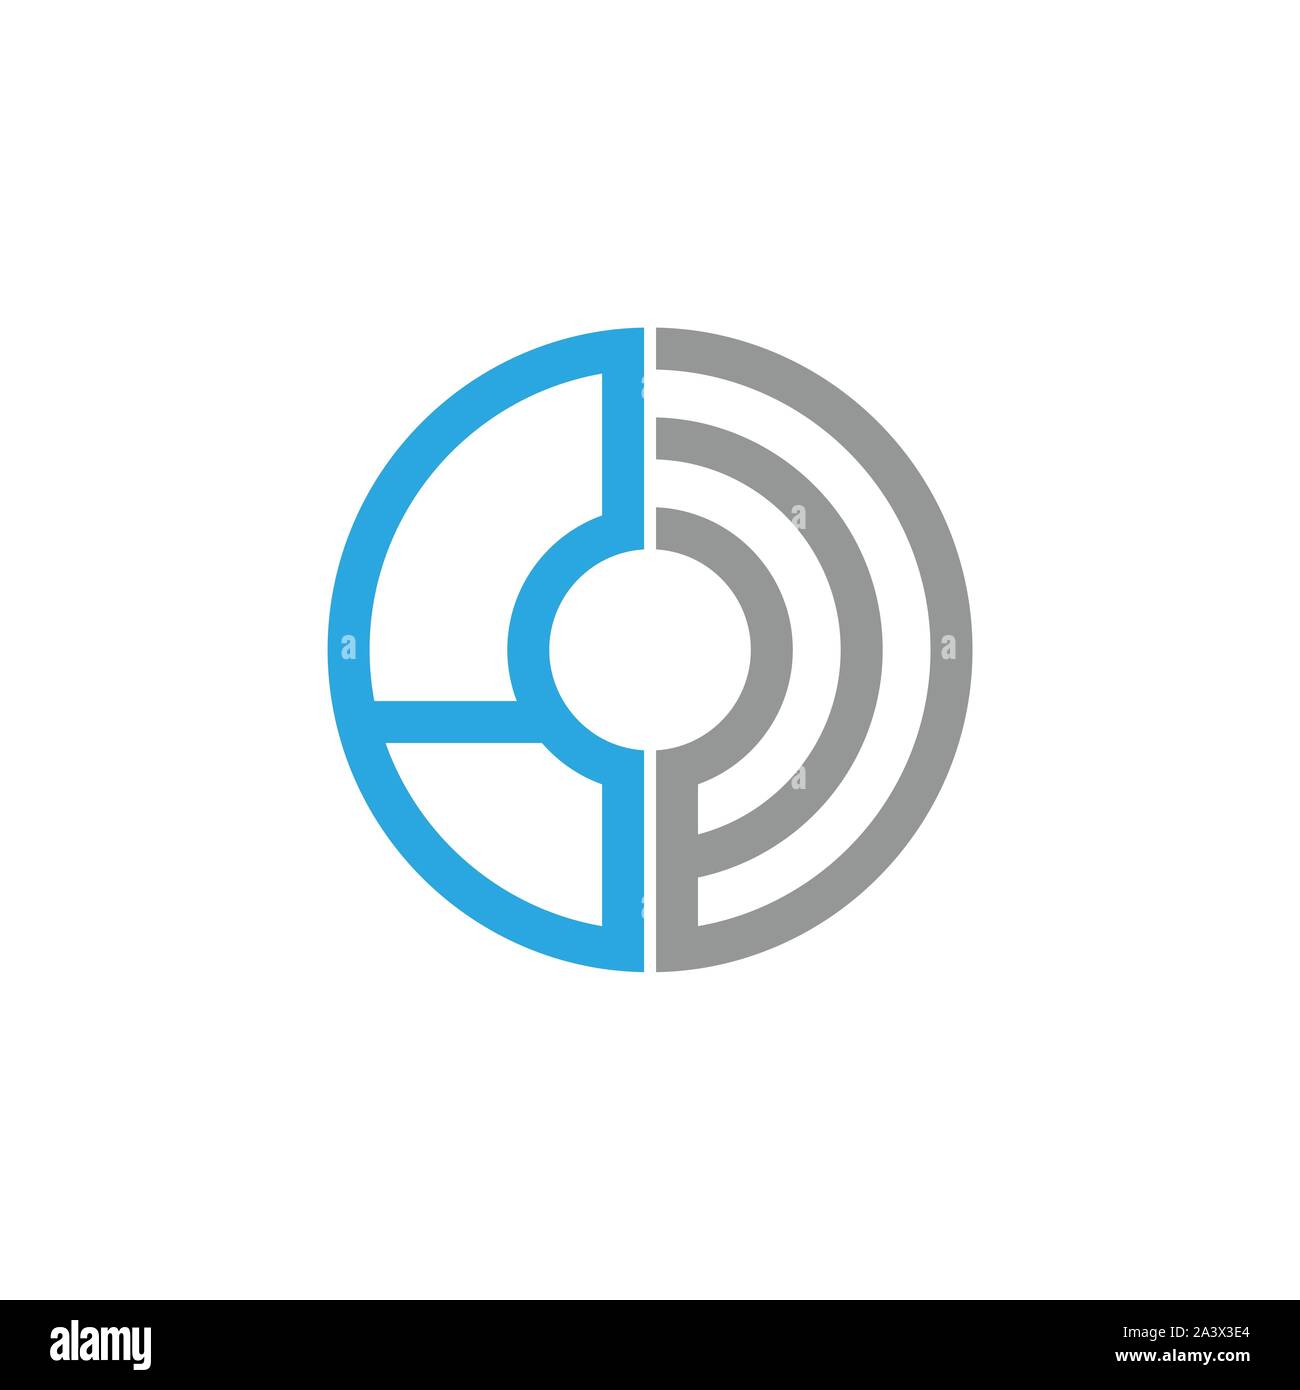 Design-Vorlage Für Digital Tech Logo. Symbol Für Abstrakte Vektortechnologie. Circle Tech, High Tech, Markenname, Computer, Netzwerkzeichen. Stock Vektor